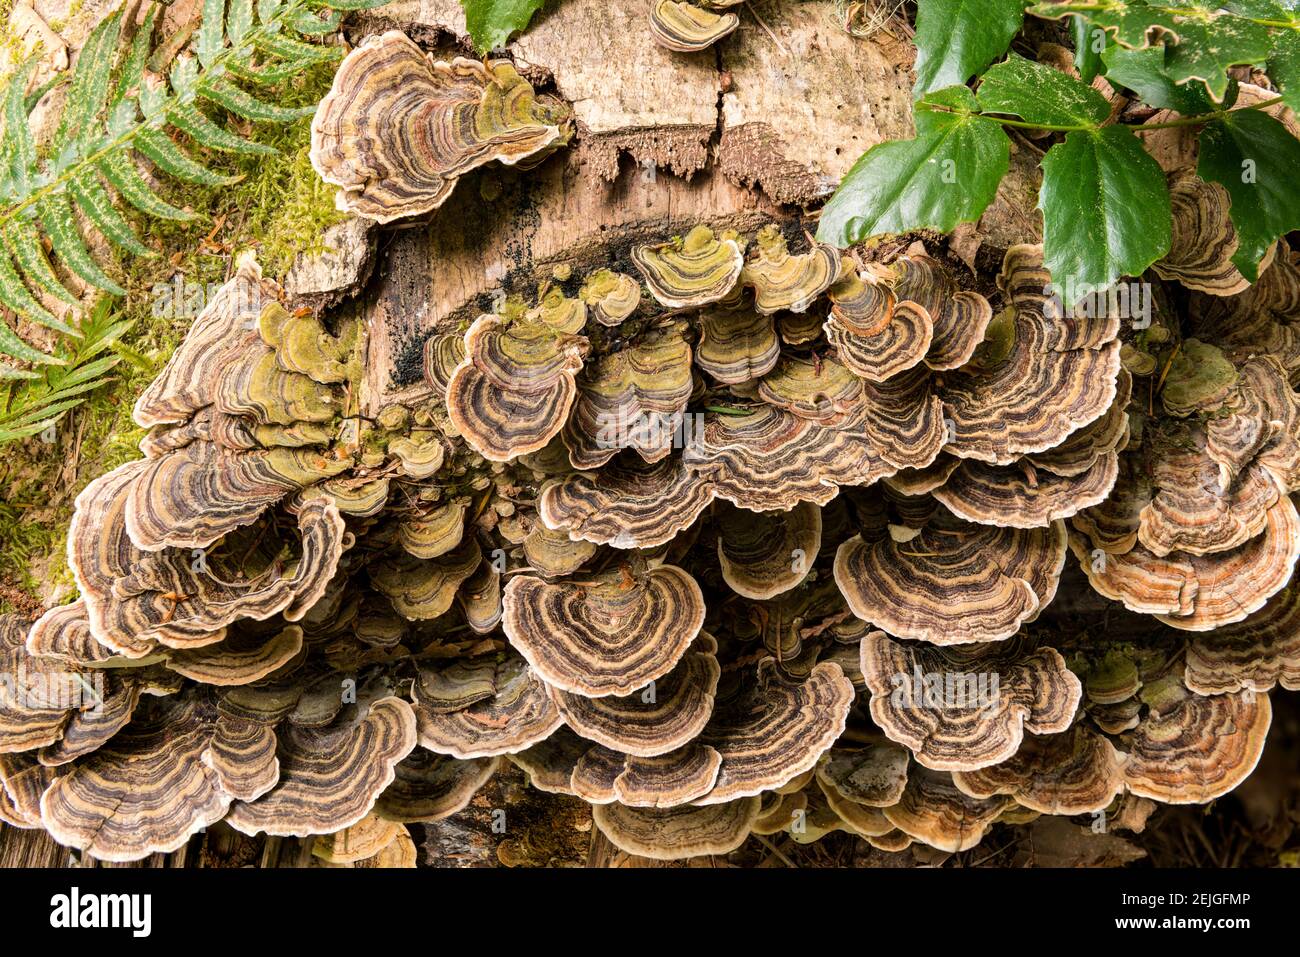 Fungo che cresce su albero caduto nella foresta pluviale Foto Stock